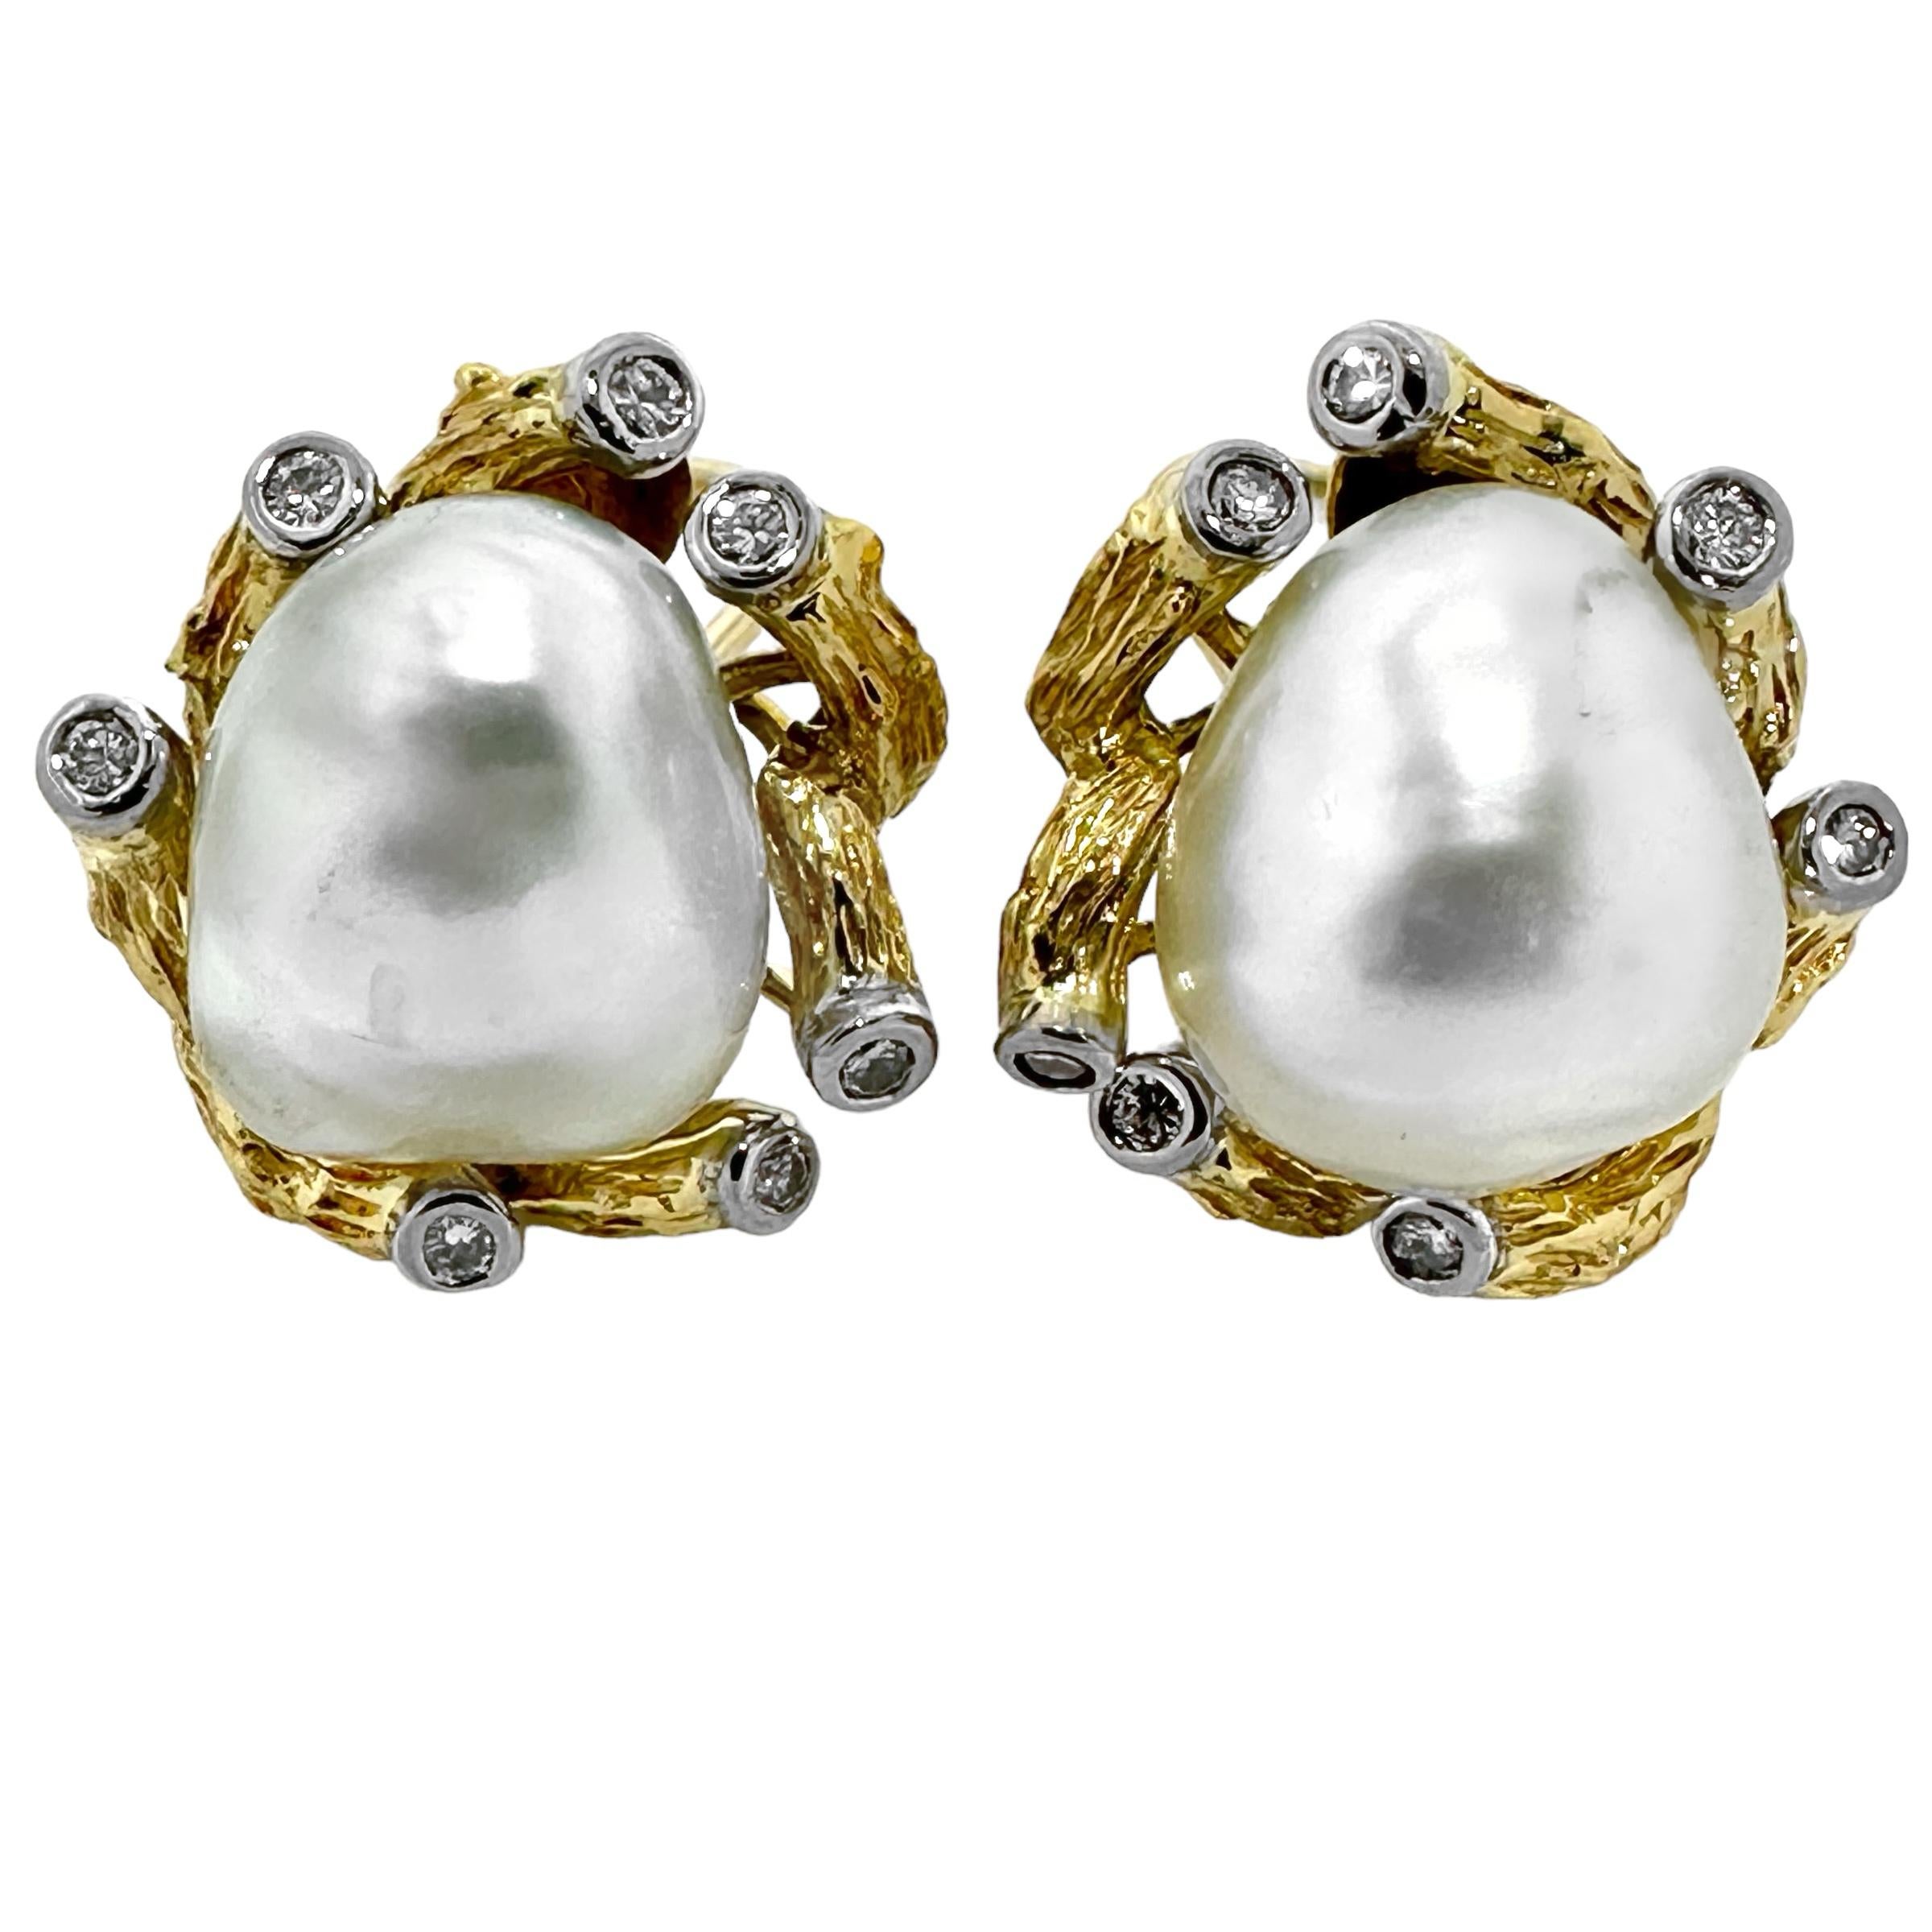 Cette paire unique de boucles d'oreilles Trio, milieu du 20e siècle, en or jaune 18 carats, platine, perles semi-baroques et diamants à motif de feuillage a un aspect naturel et organique. Deux perles de culture semi-baroques de 16 mm, blanc